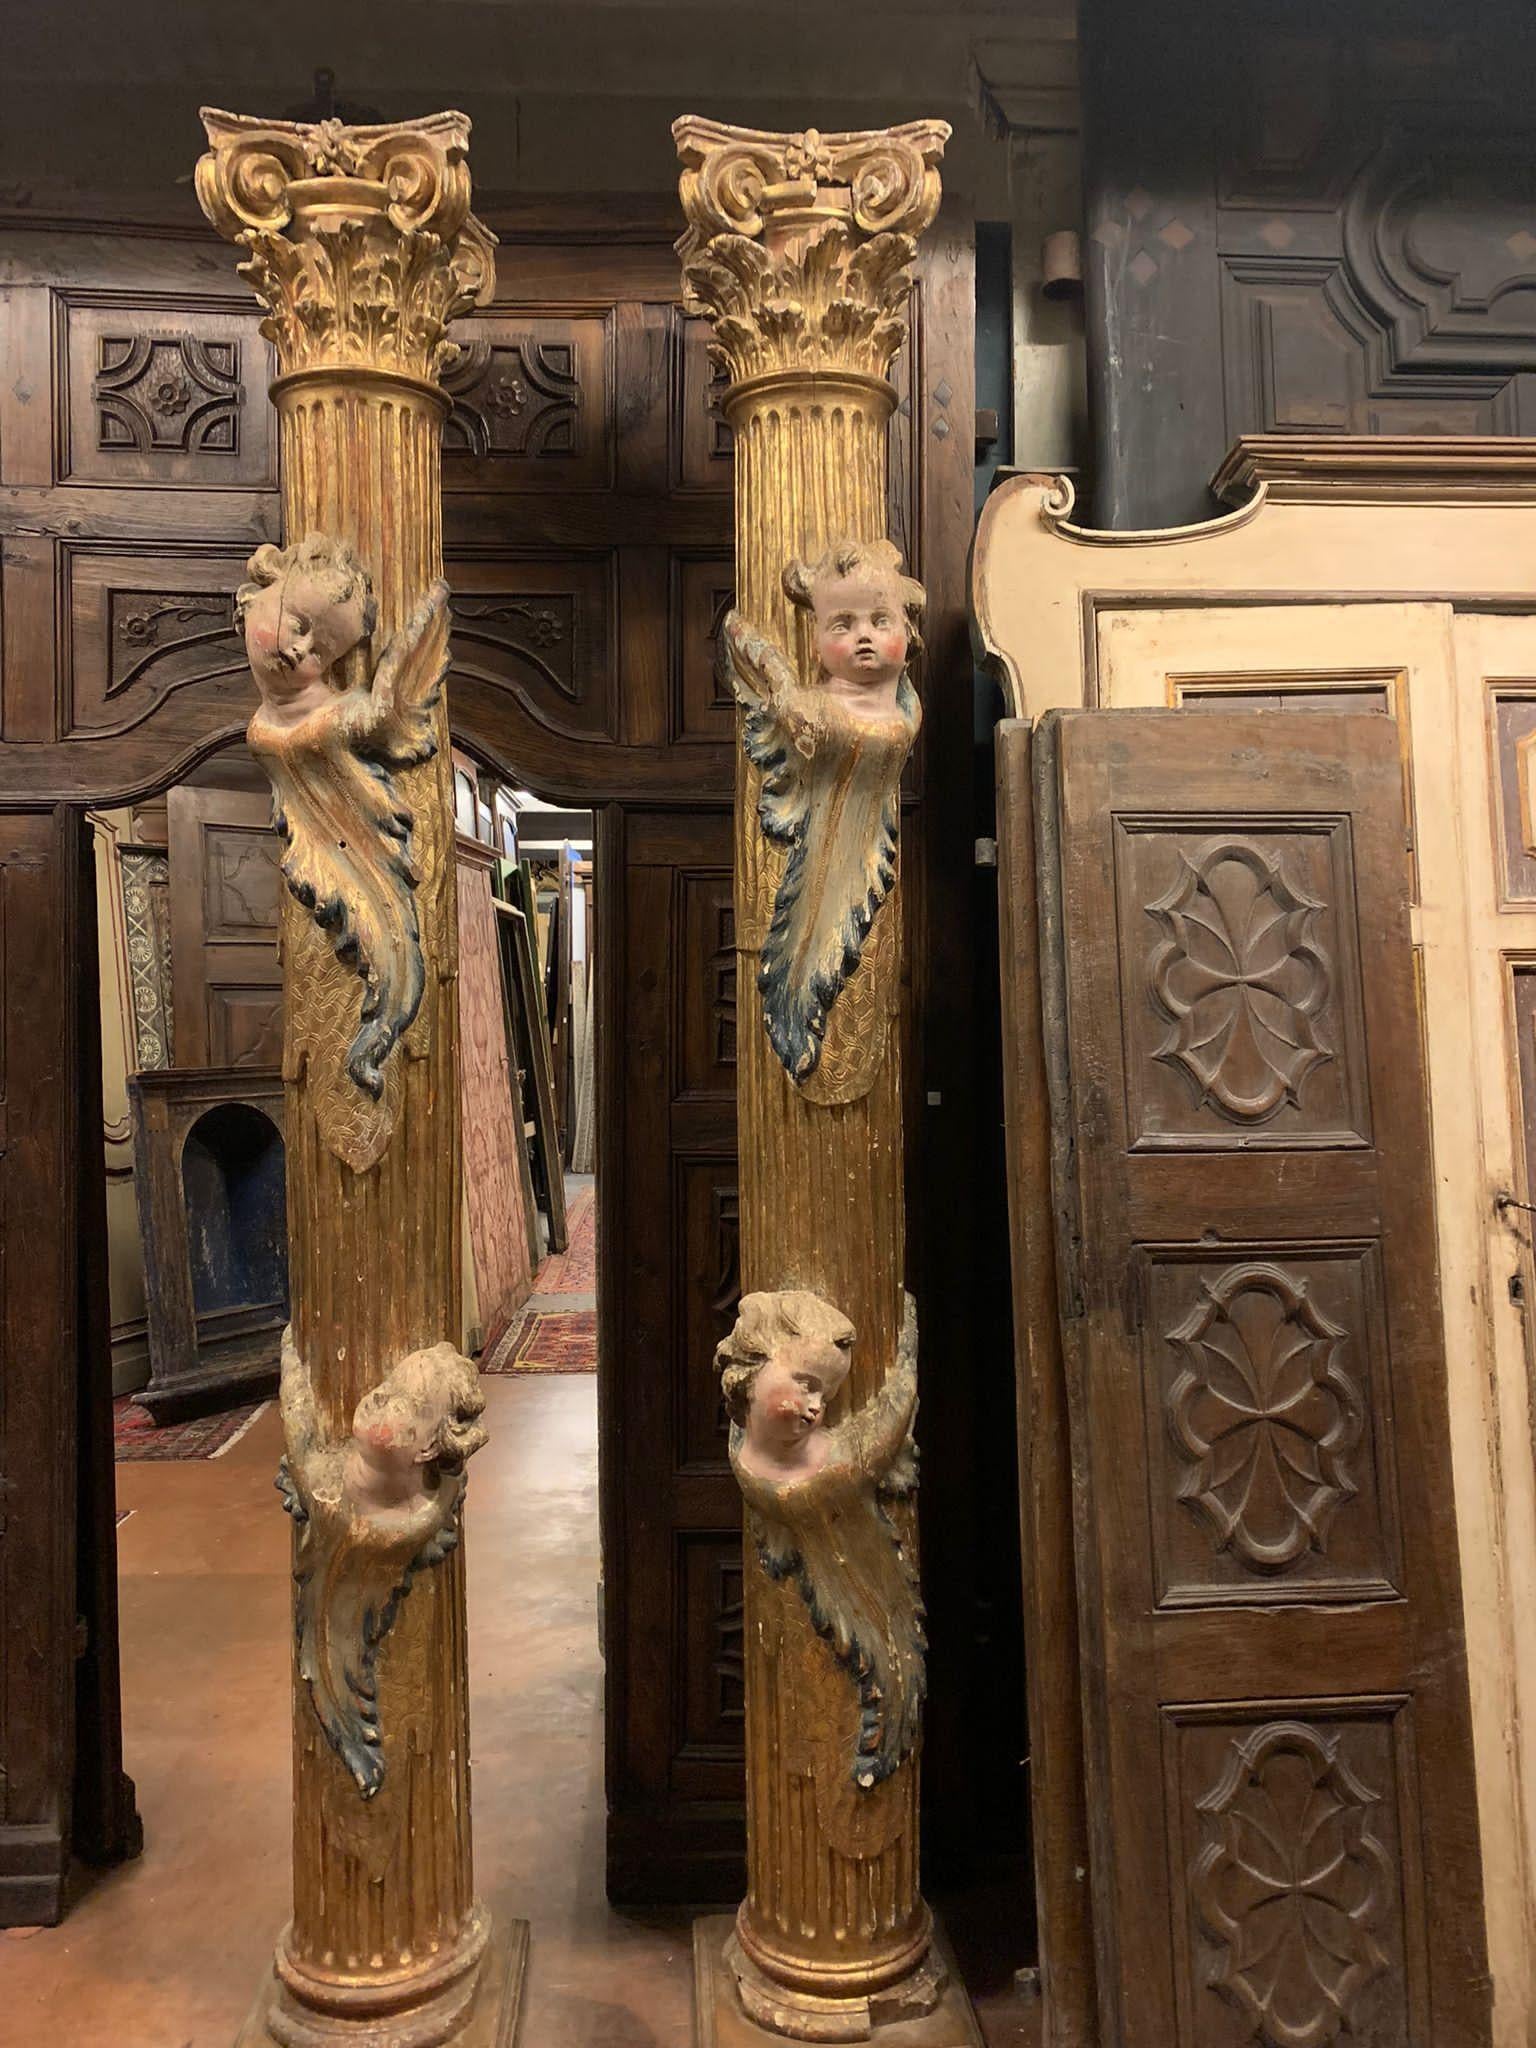 Antikes Säulenpaar aus Massivholz, reich geschnitzt und vergoldet, mit gebänderten polychromen Putten, von hohem Alter und handgefertigt in den 1600er Jahren, aus einer alten Kirche in Spanien, Messung 40 x 40 x H 265 cm Basis.
Unglaublicher